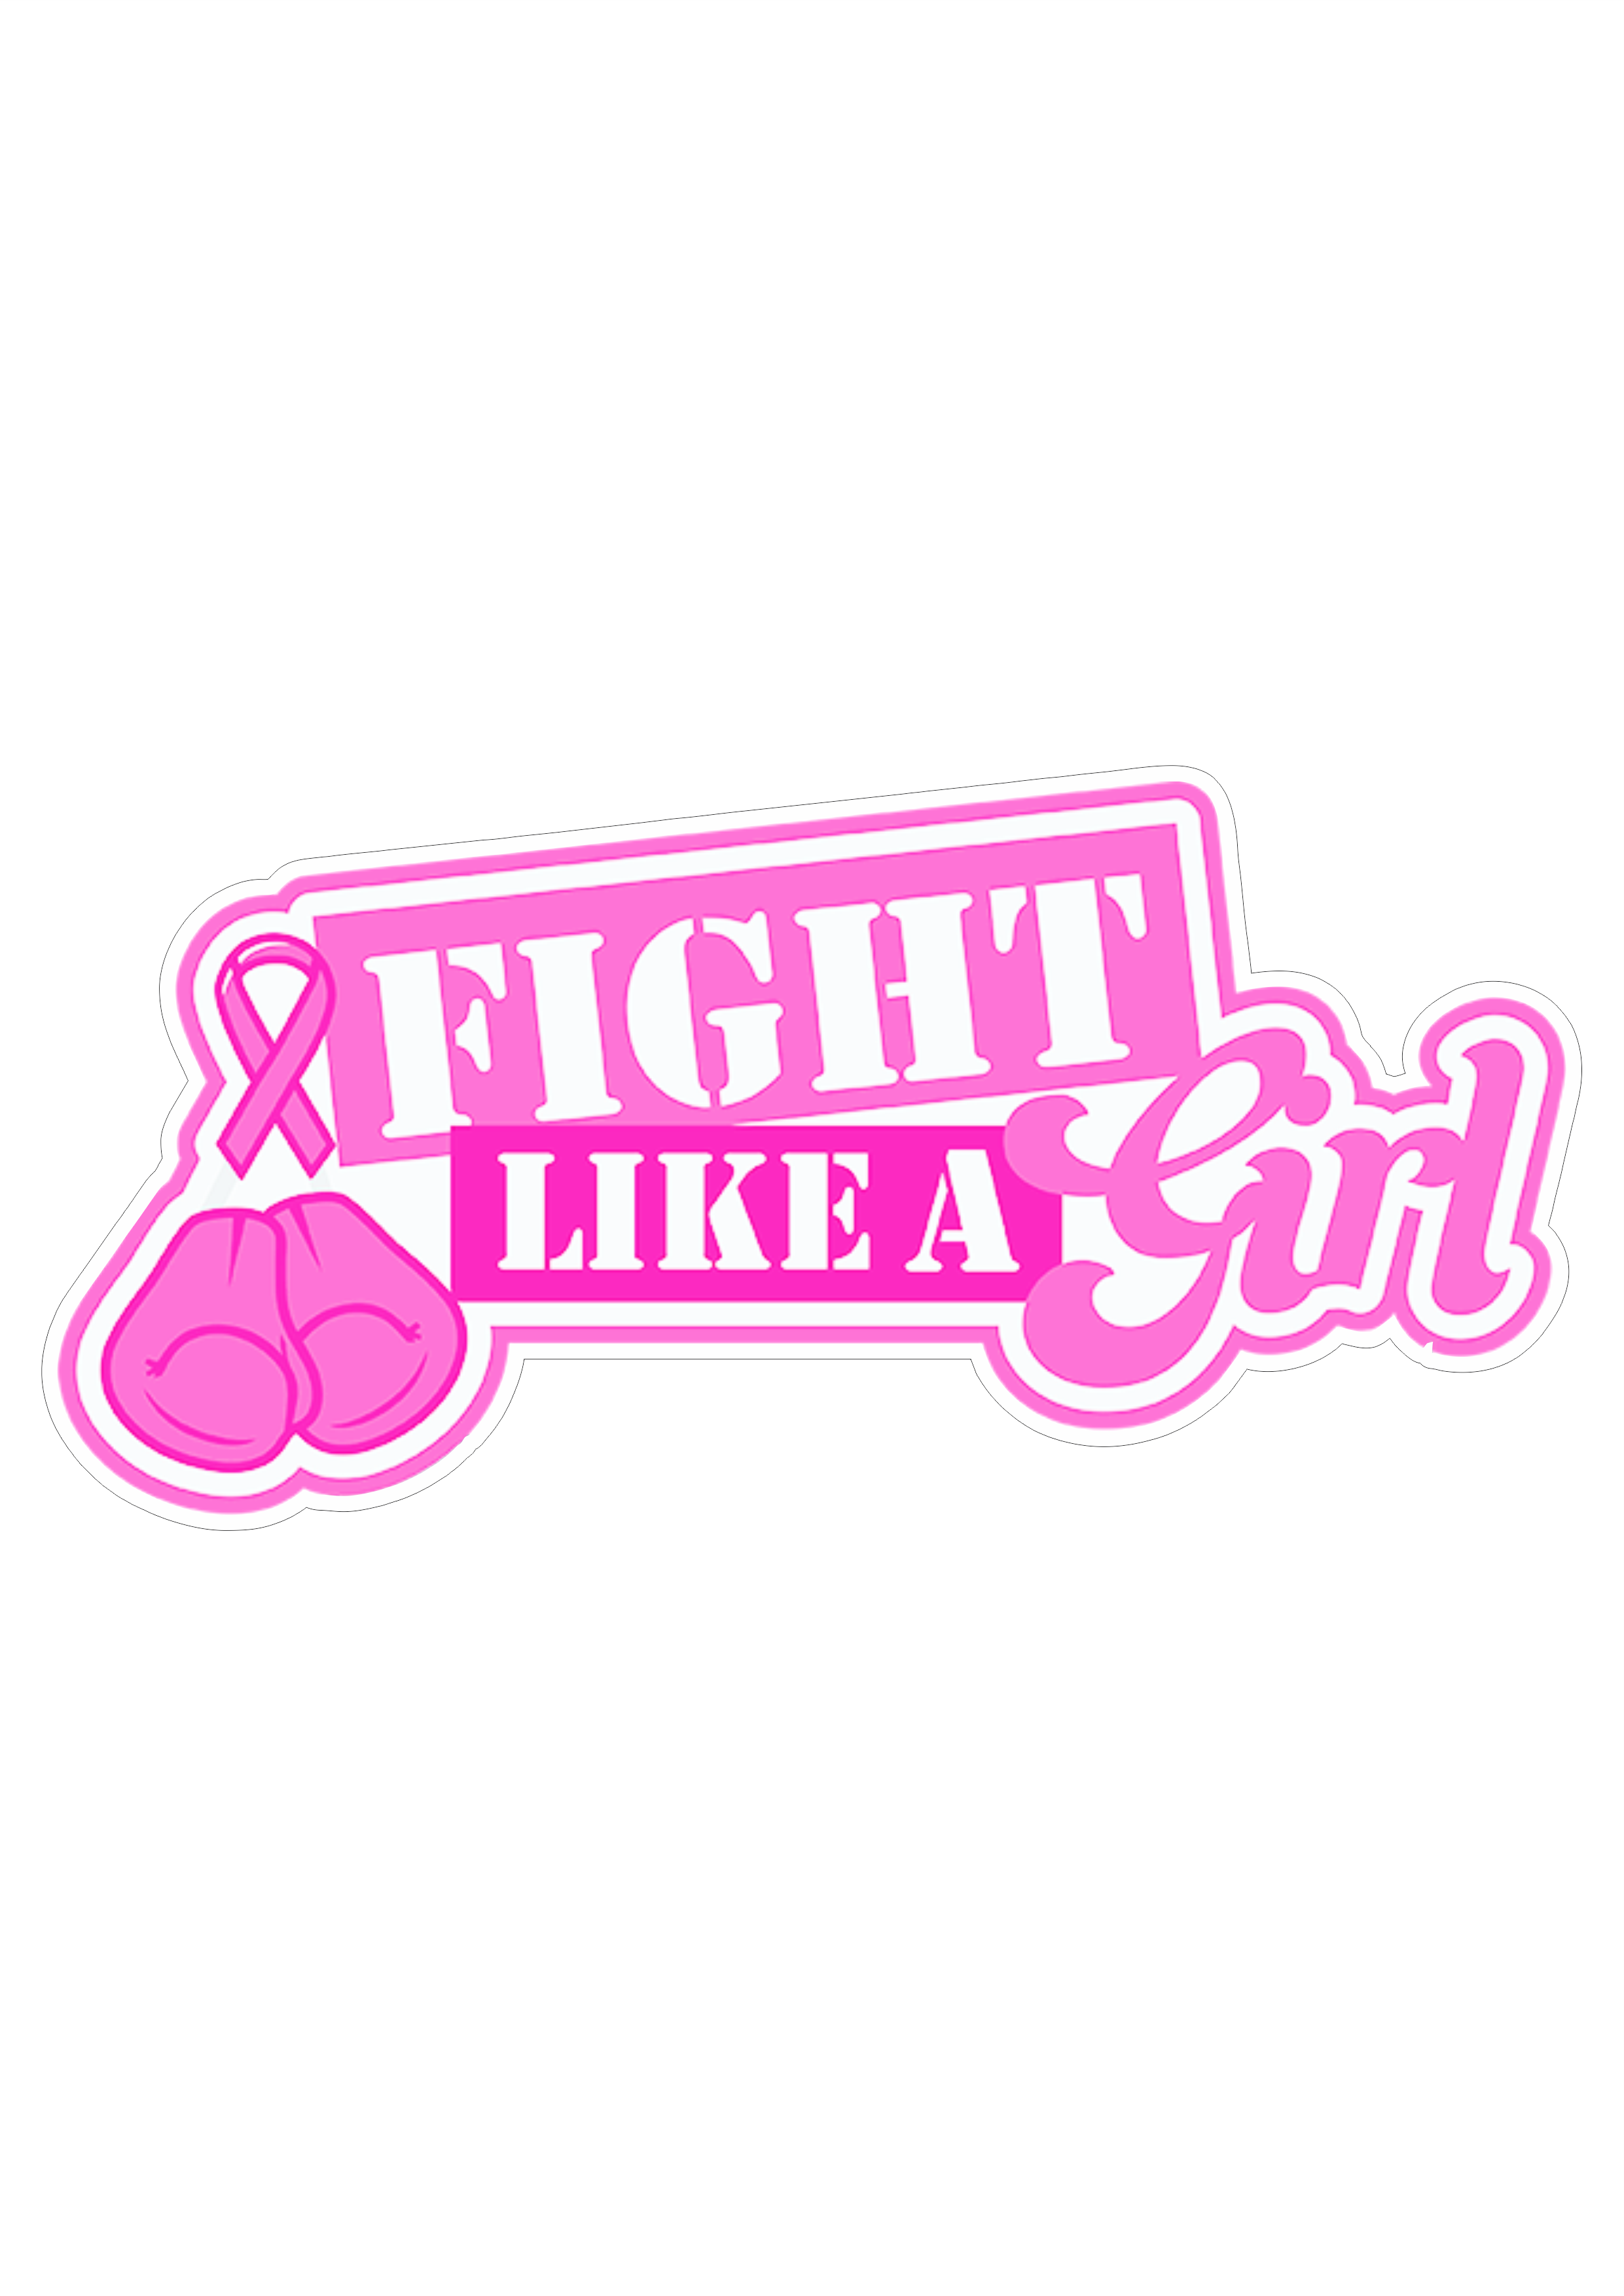 Fight like a girl lute como uma garota outubro rosa mês de prevenção ao câncer de mama lacinho de fita campanha de conscientização png